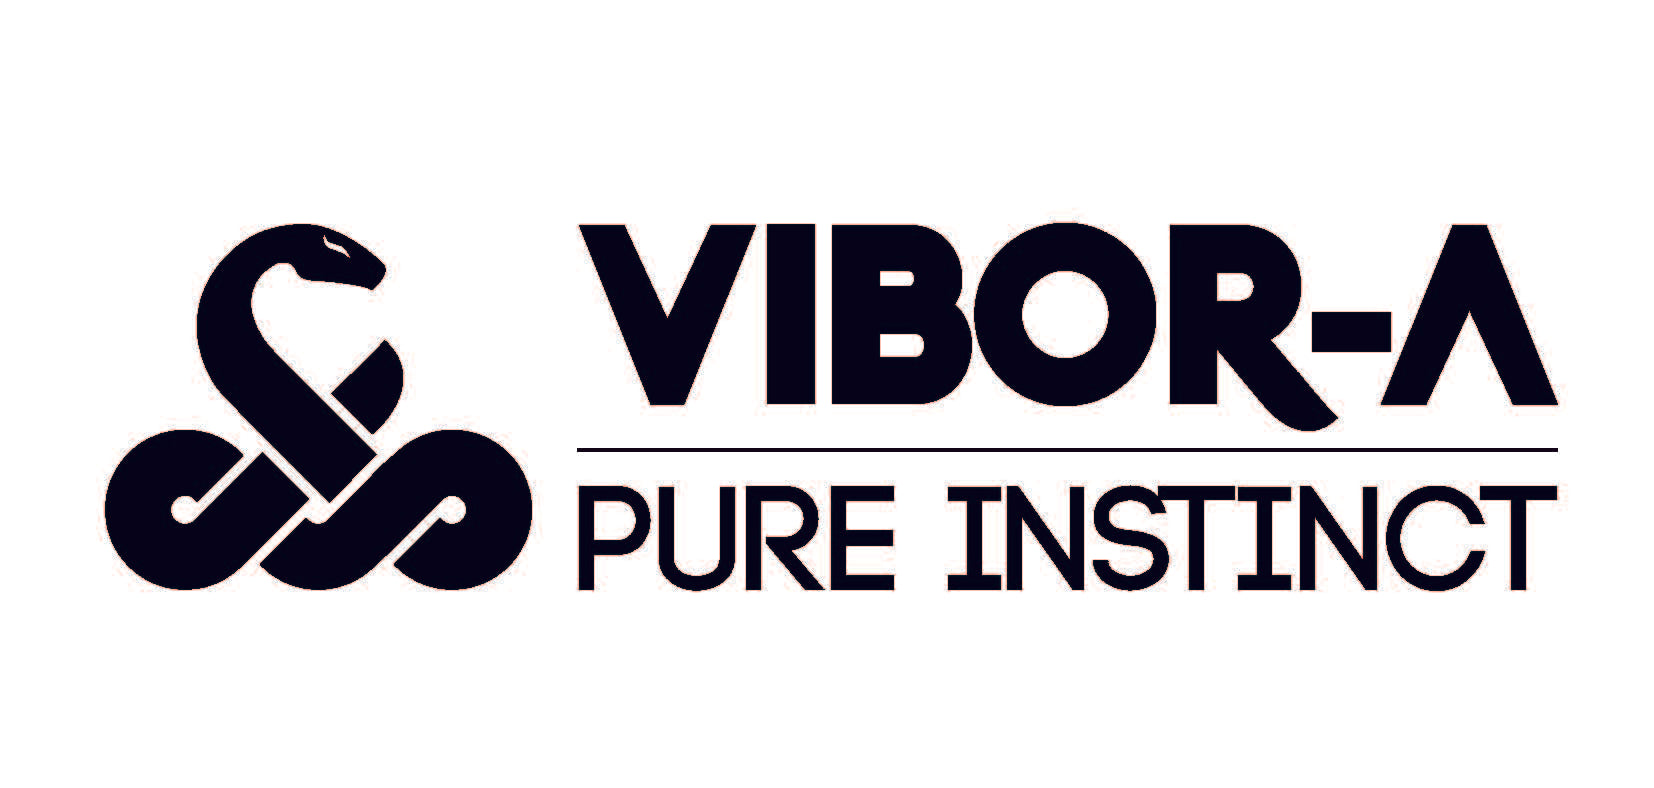 Vibor-A Pure Instinct logo